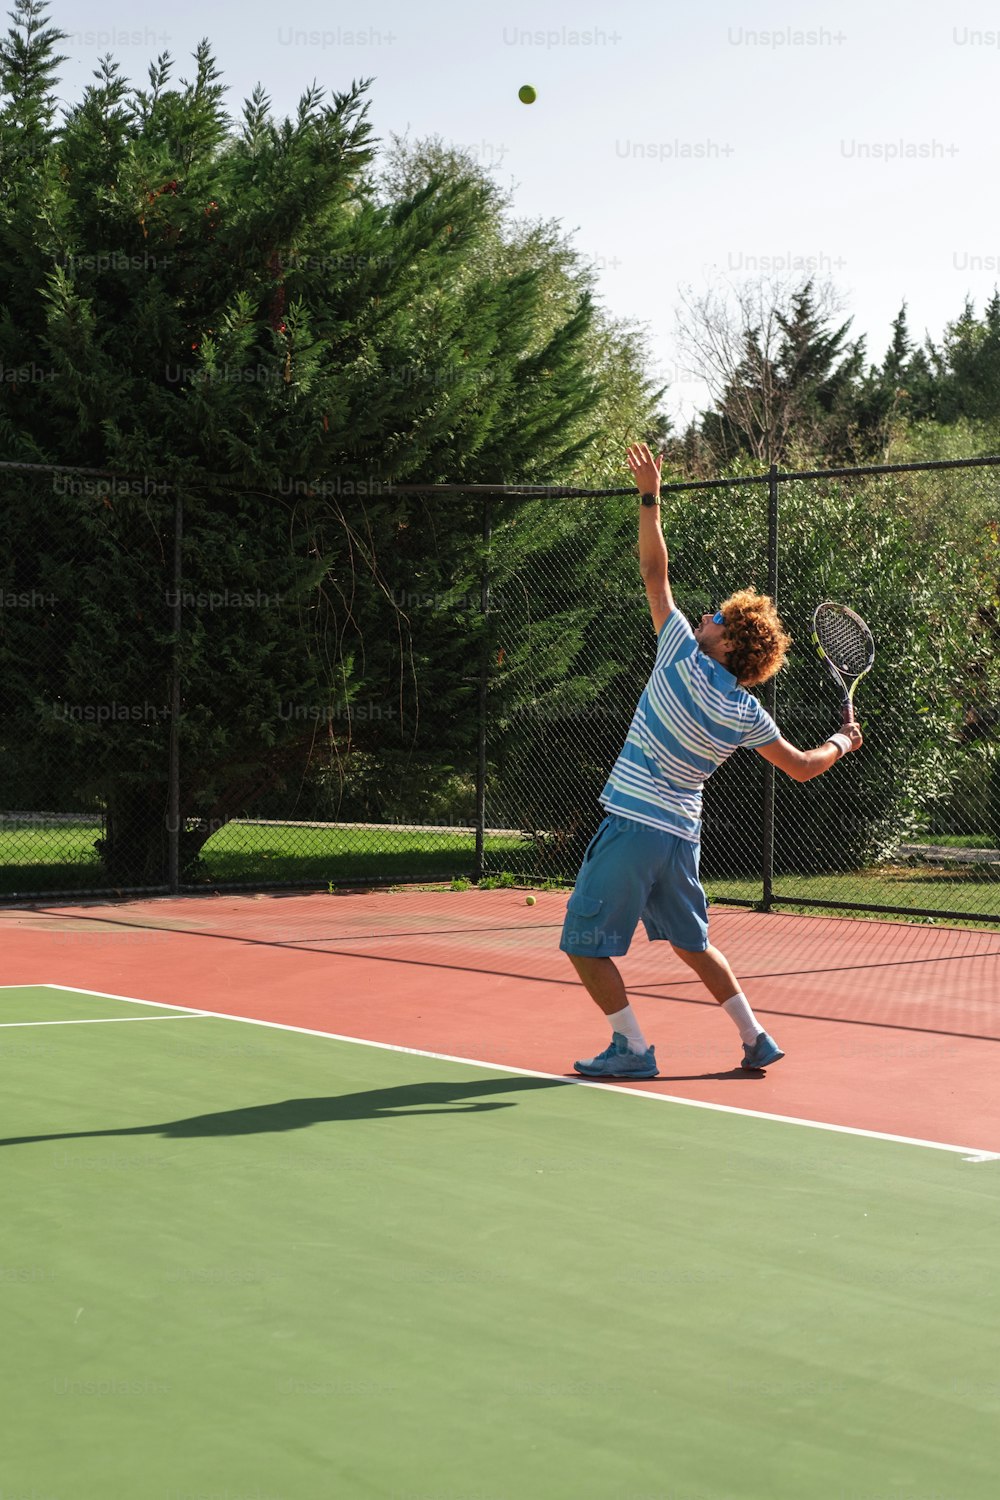 Un homme tenant une raquette de tennis sur un court de tennis